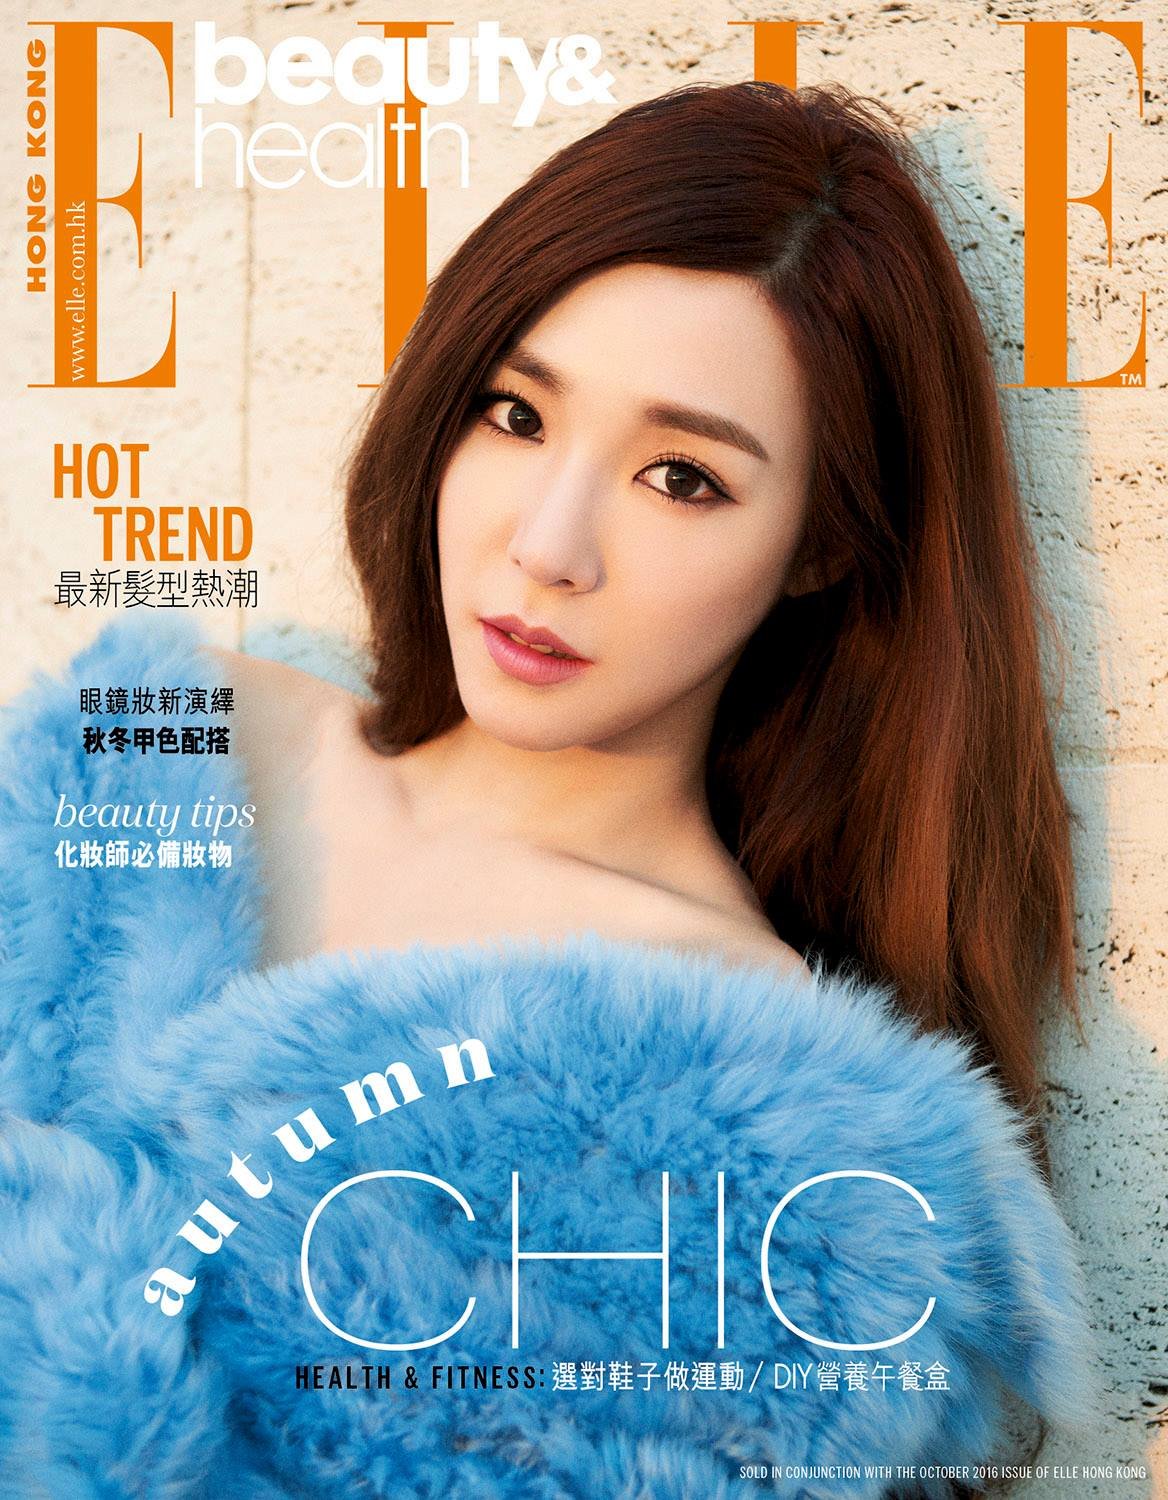 [PIC][07-07-2016]Tiffany xuất hiện trên trang bìa tháng 10 của tạp chí "ELLE HONGKONG" AtGVdpjwjh-3000x3000